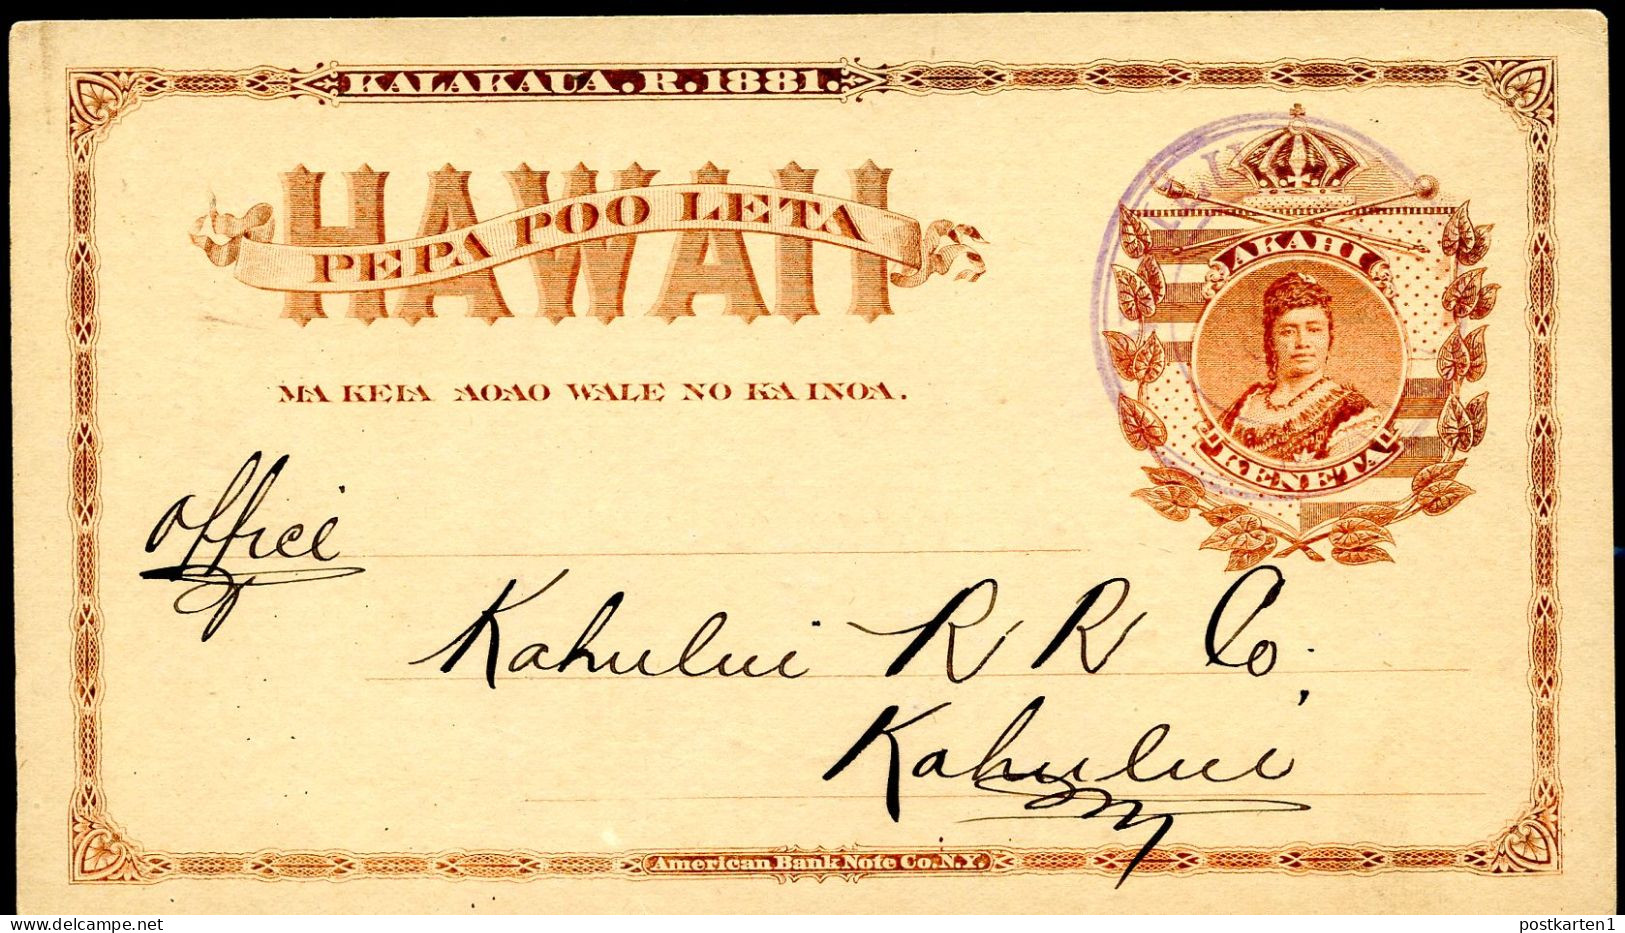 Hawaii Postal Card UX1 Wailuku Maui WILDERS'S S.S. - Kahului Vf 1890 - Hawai